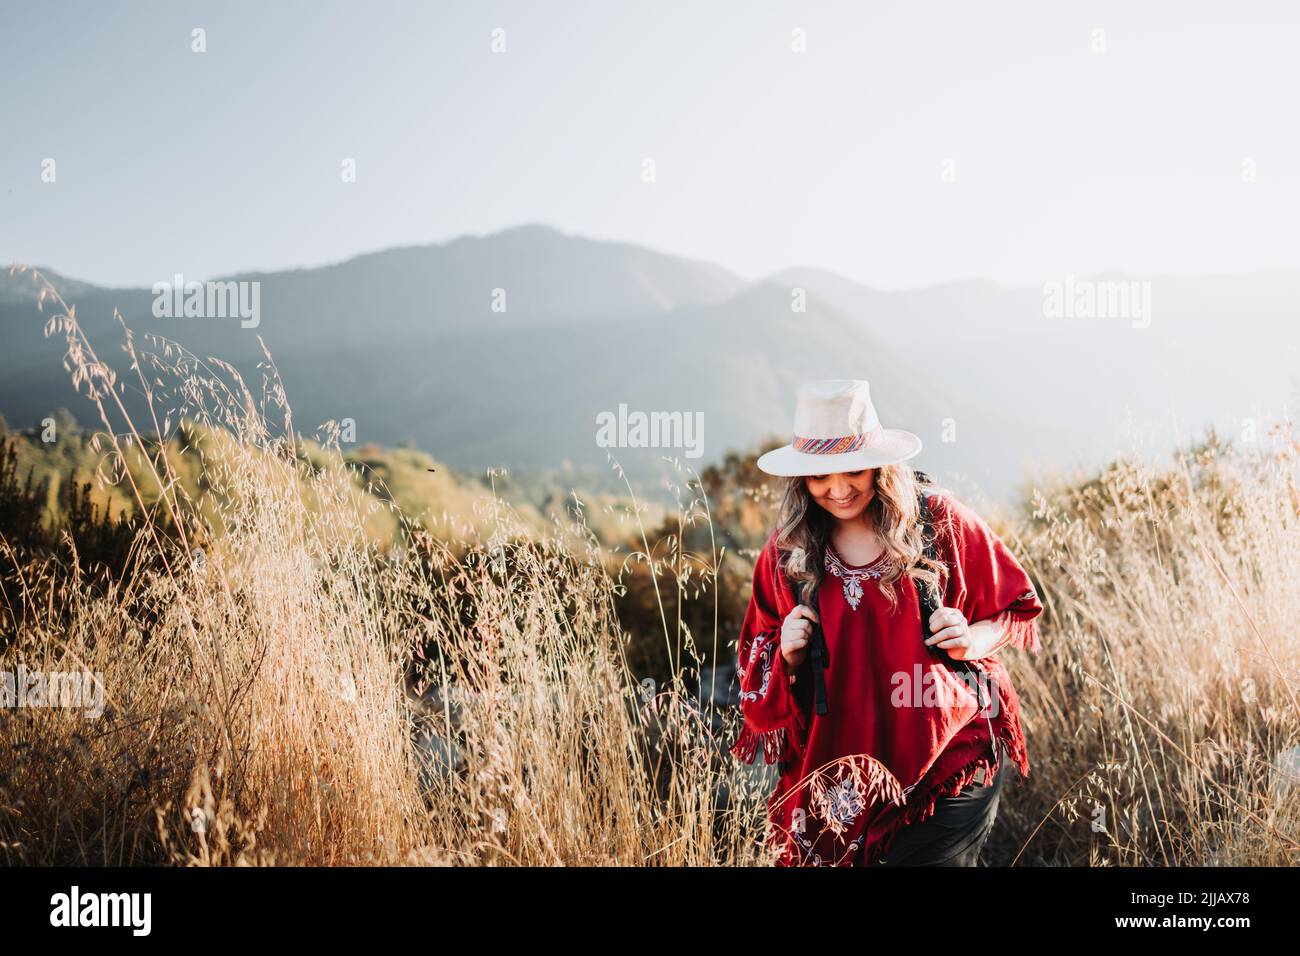 Latines routard femme portant un poncho rouge traditionnel et un chapeau dans un paysage ensoleillé. Copier l'espace Banque D'Images